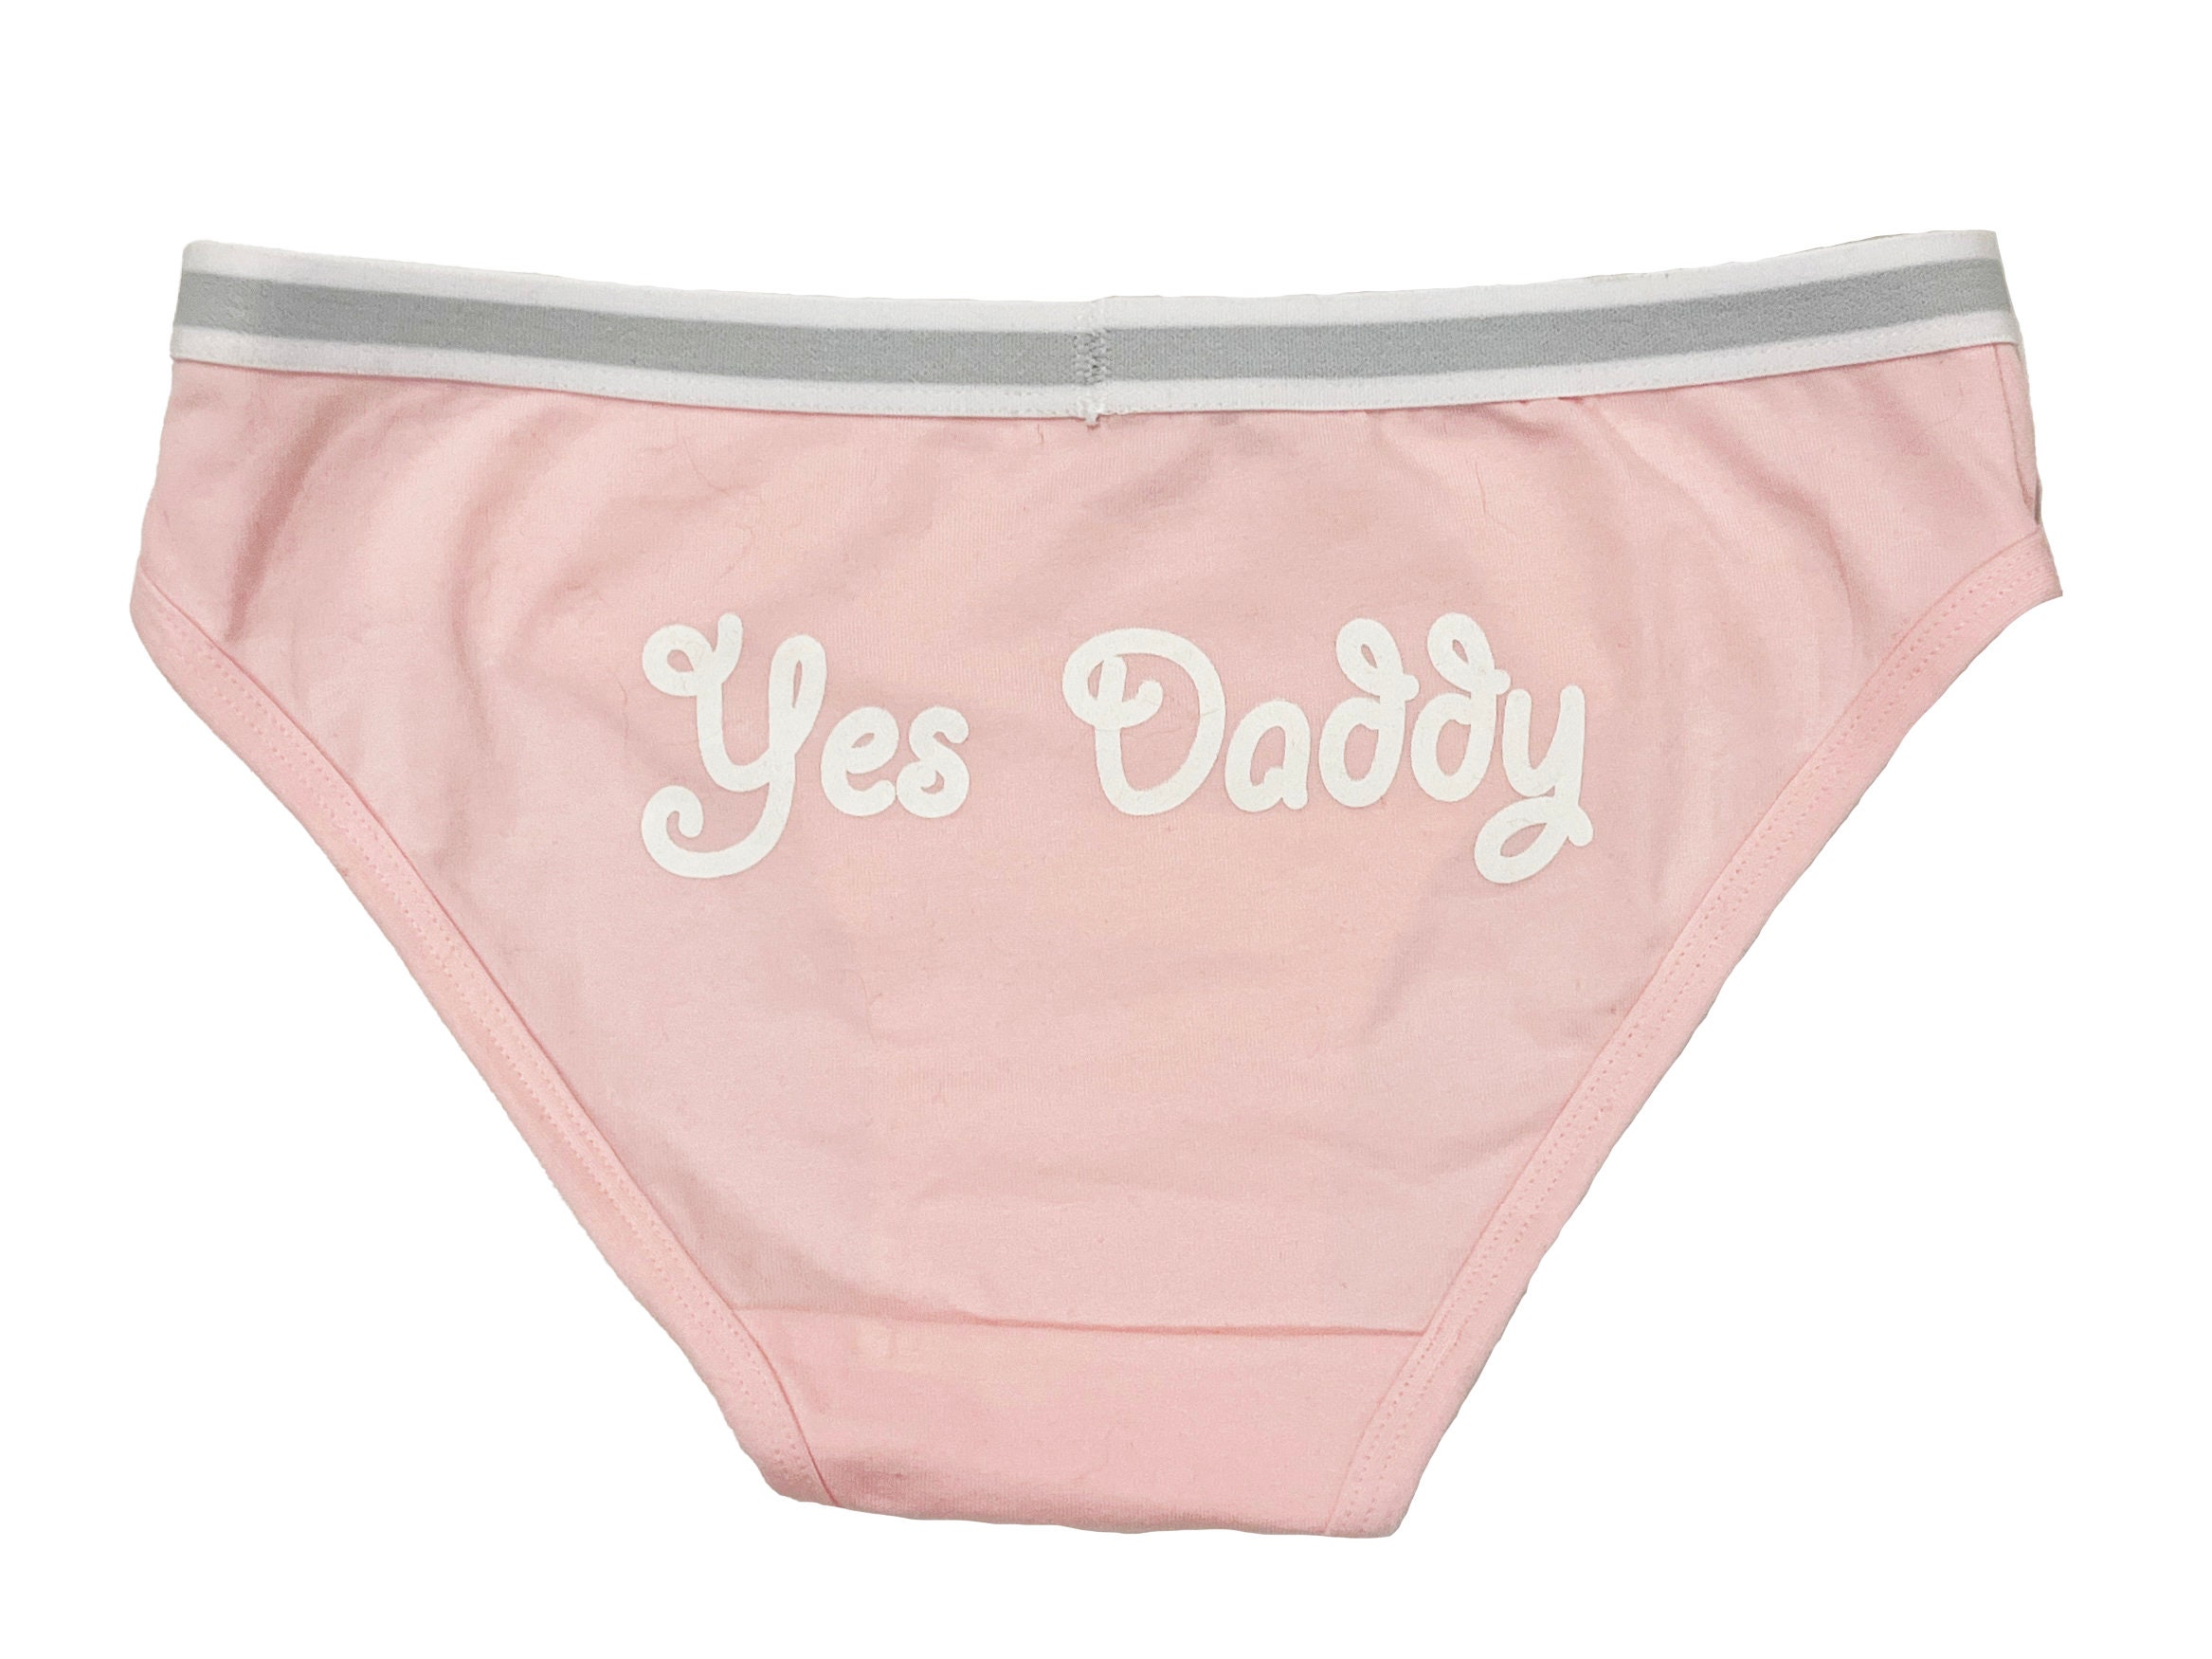 Yes Daddy Bikini Panty With Lace Trim -  Canada